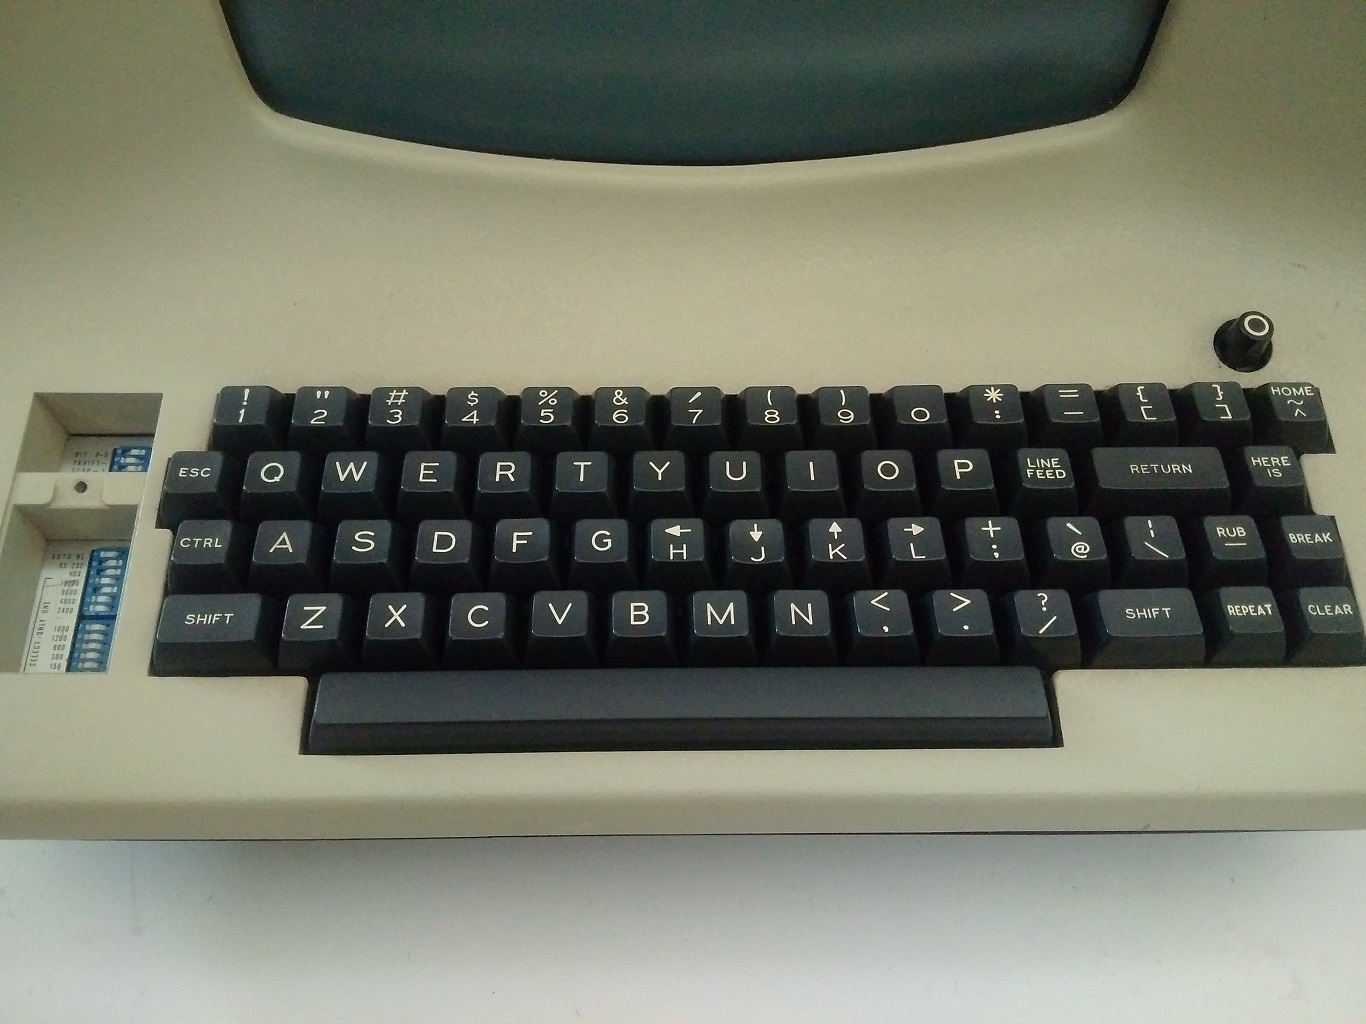 A Lear Siegler ADM-3A
keyboard.